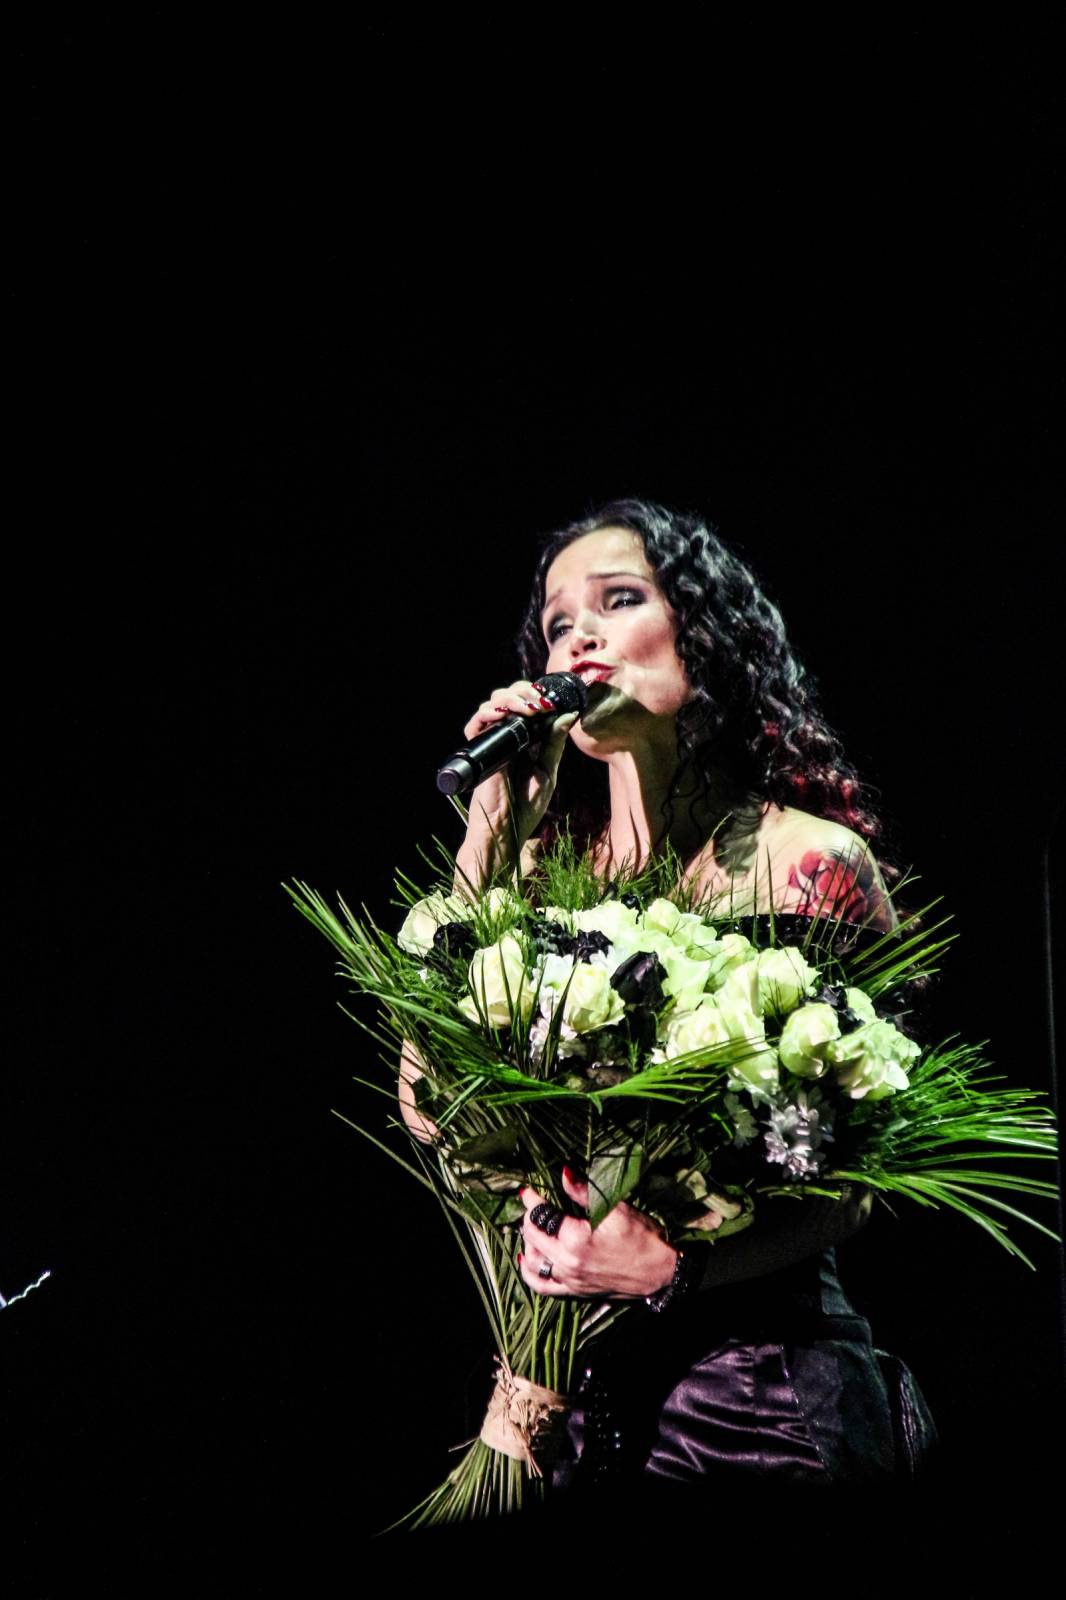 Tarja Turunen, bývalá zpěvačka Nightwish, zazpívala v Praze v rámci vánočního turné s filharmonií